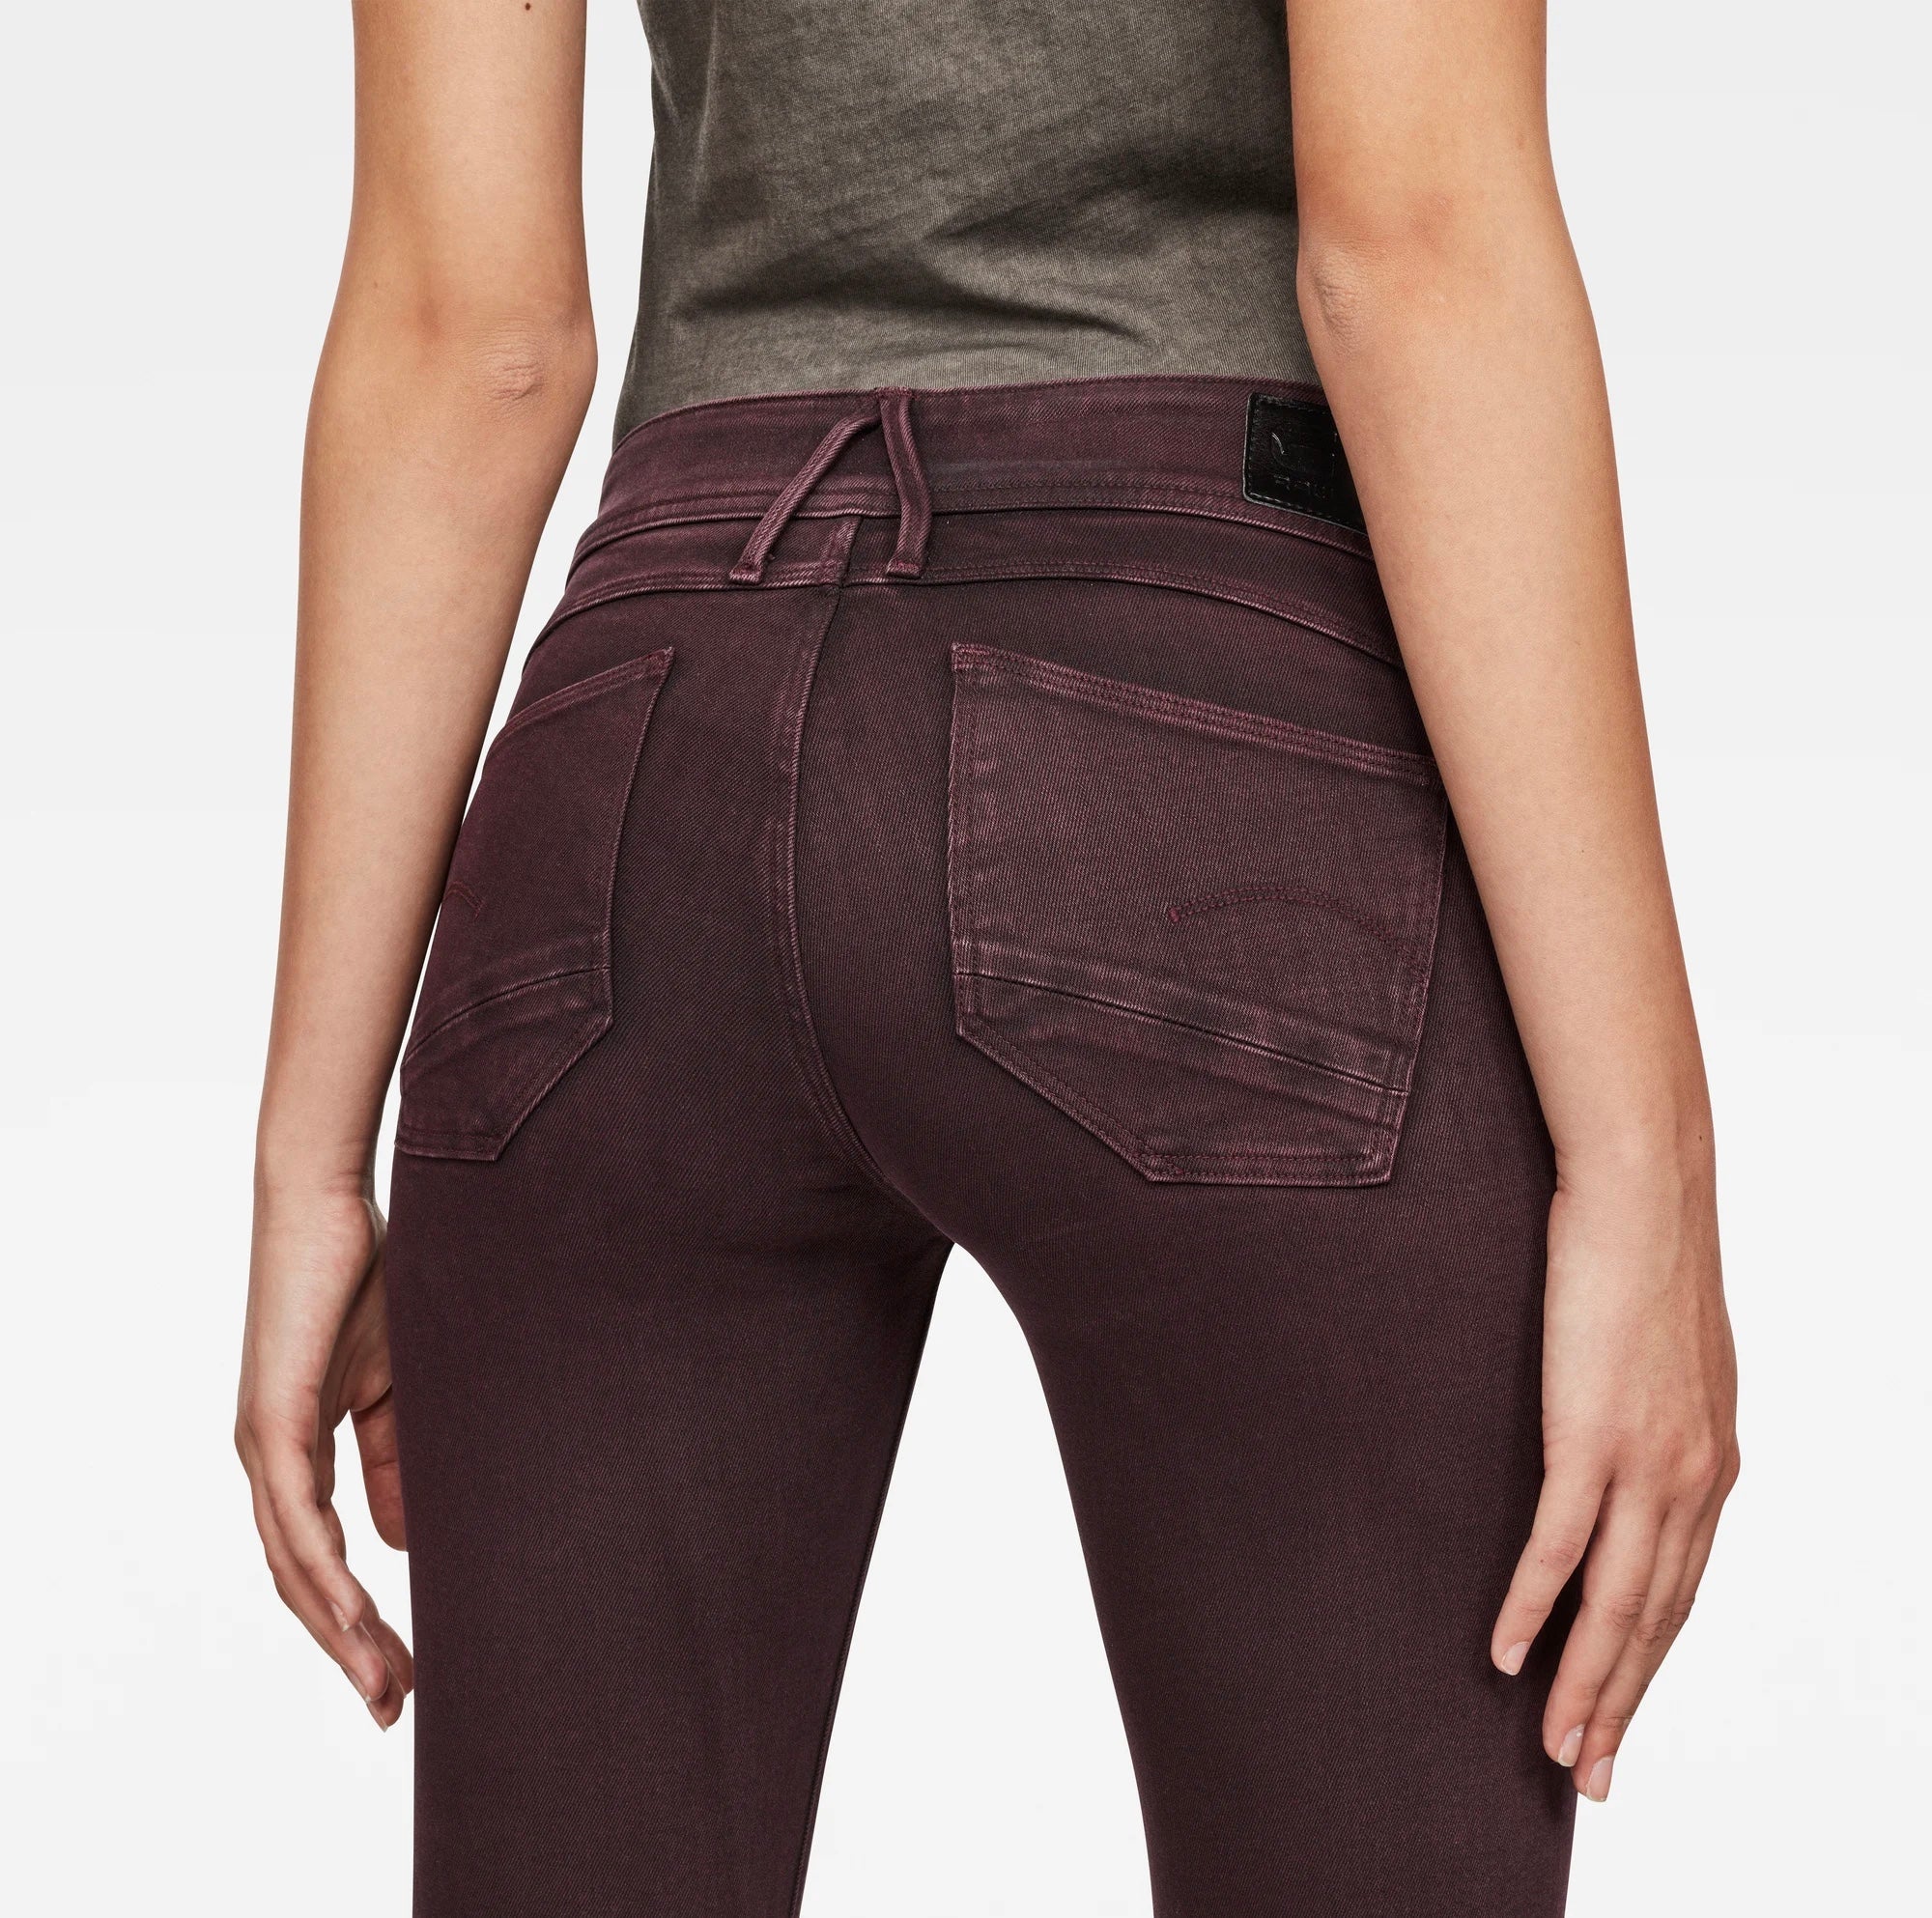 Women's cargo pants skinny mid skinny waist jalpo superstretch